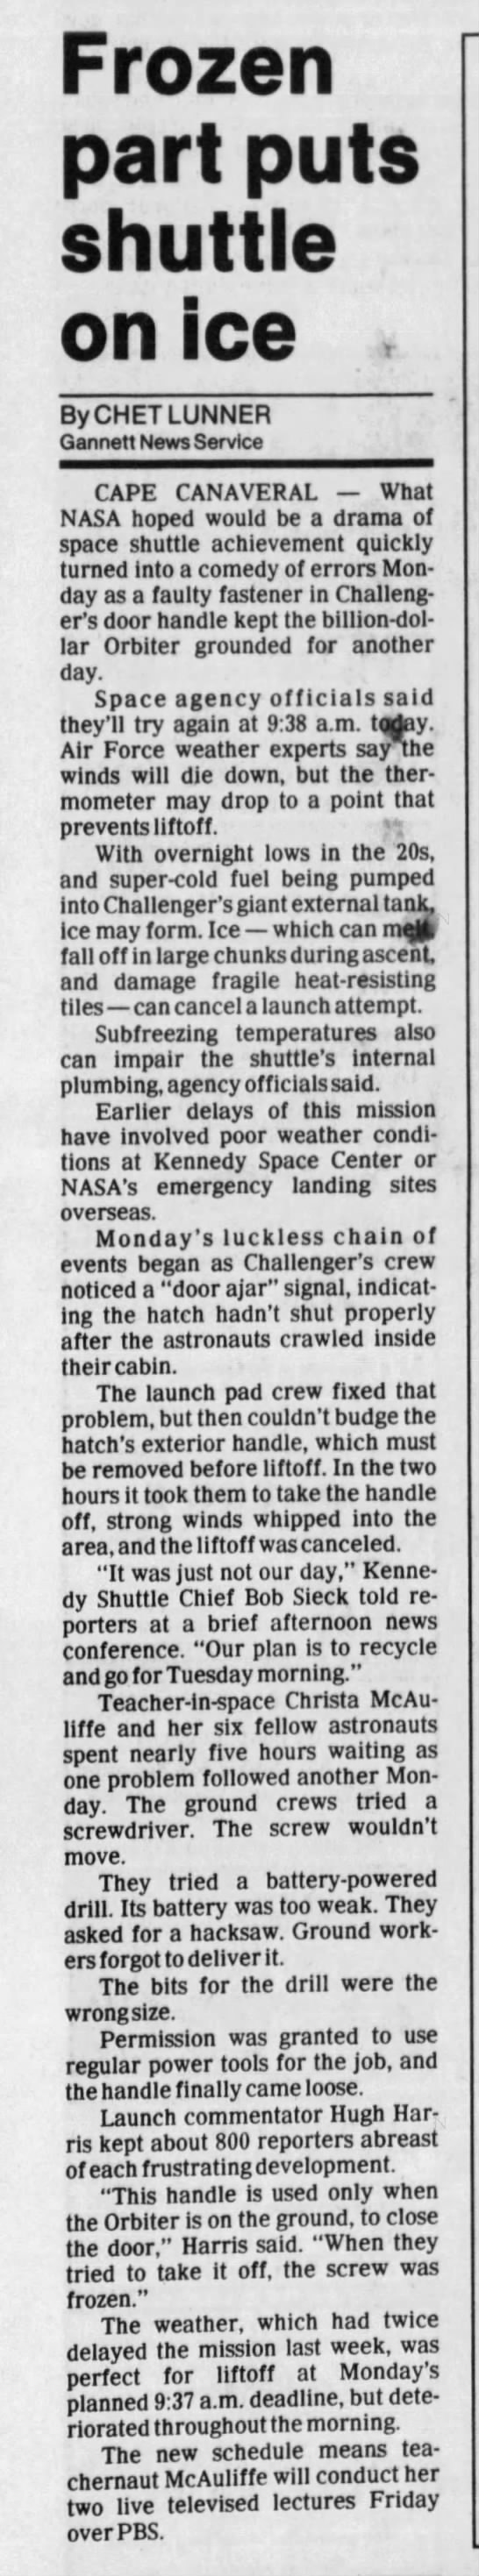 Broken door handle delays Challenger launch on 27 January 1986 - 